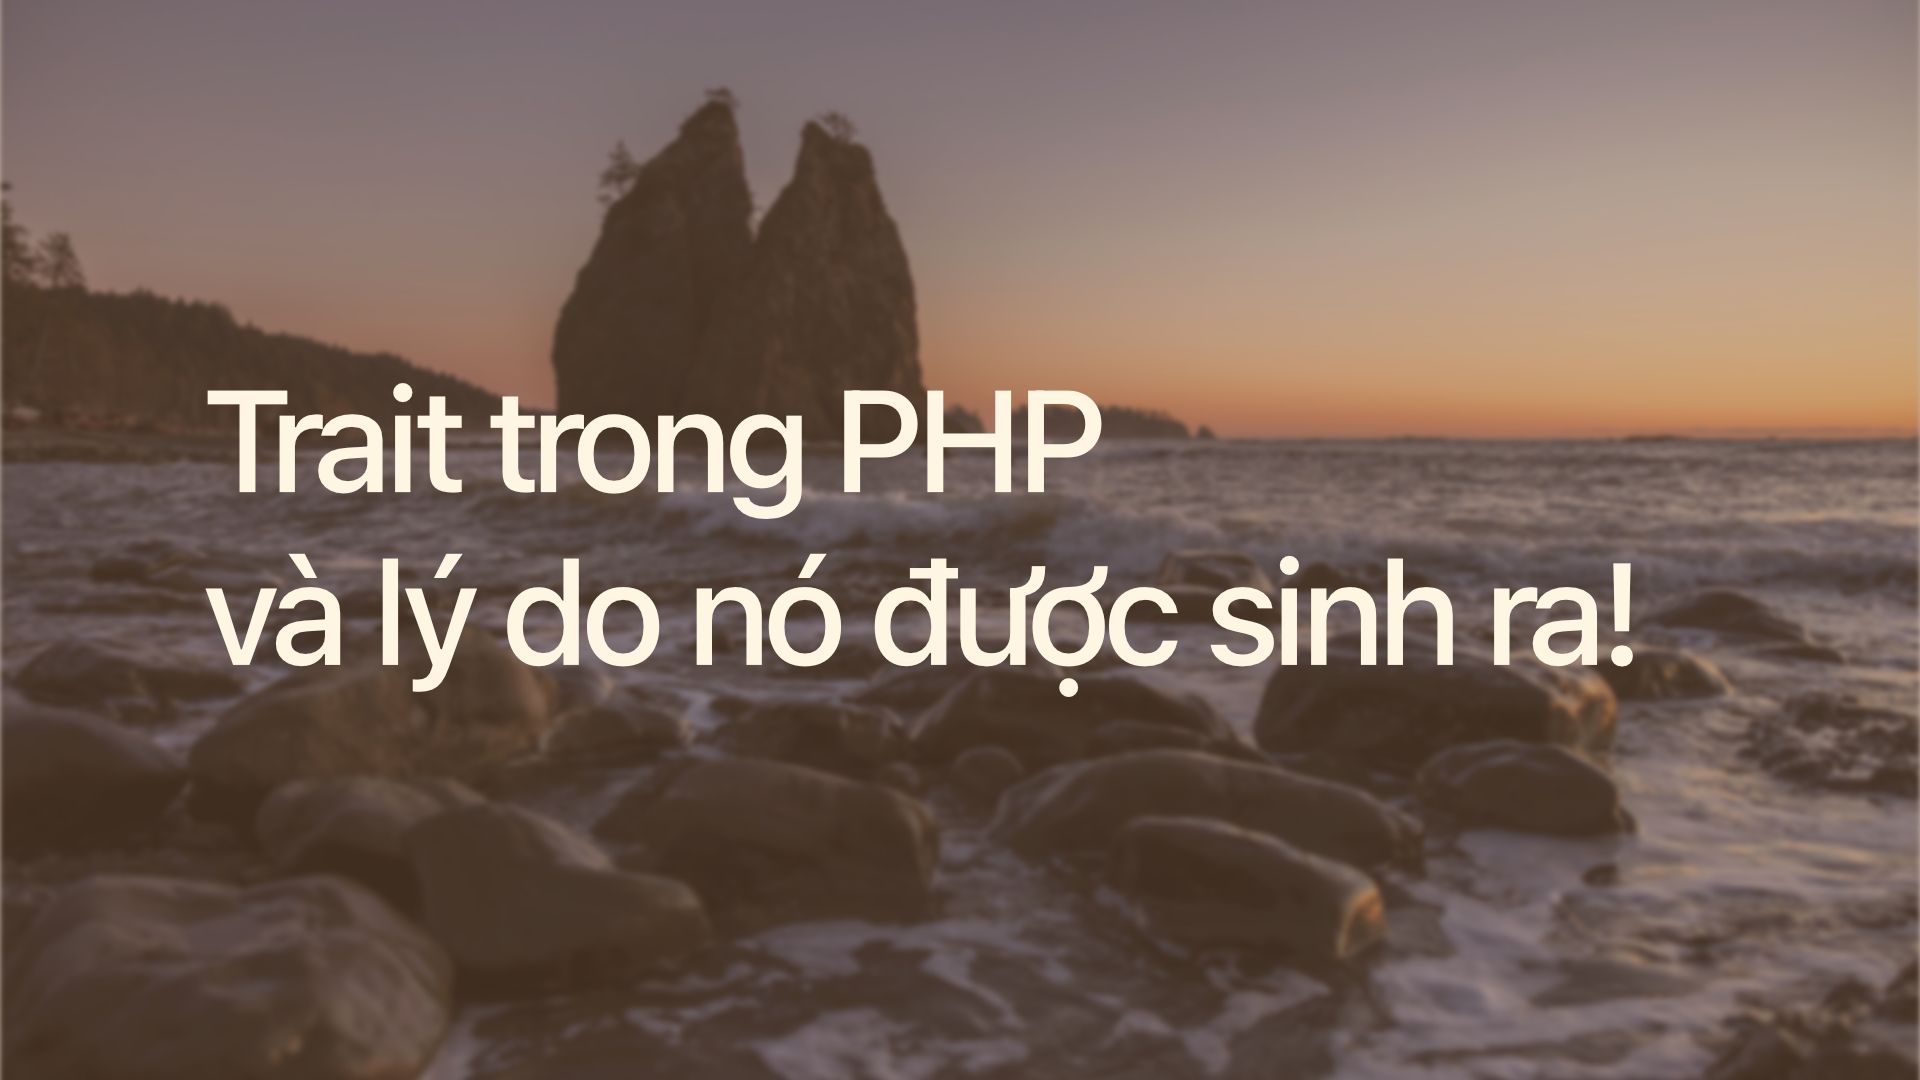 Trait trong PHP và lý do nó được sinh ra